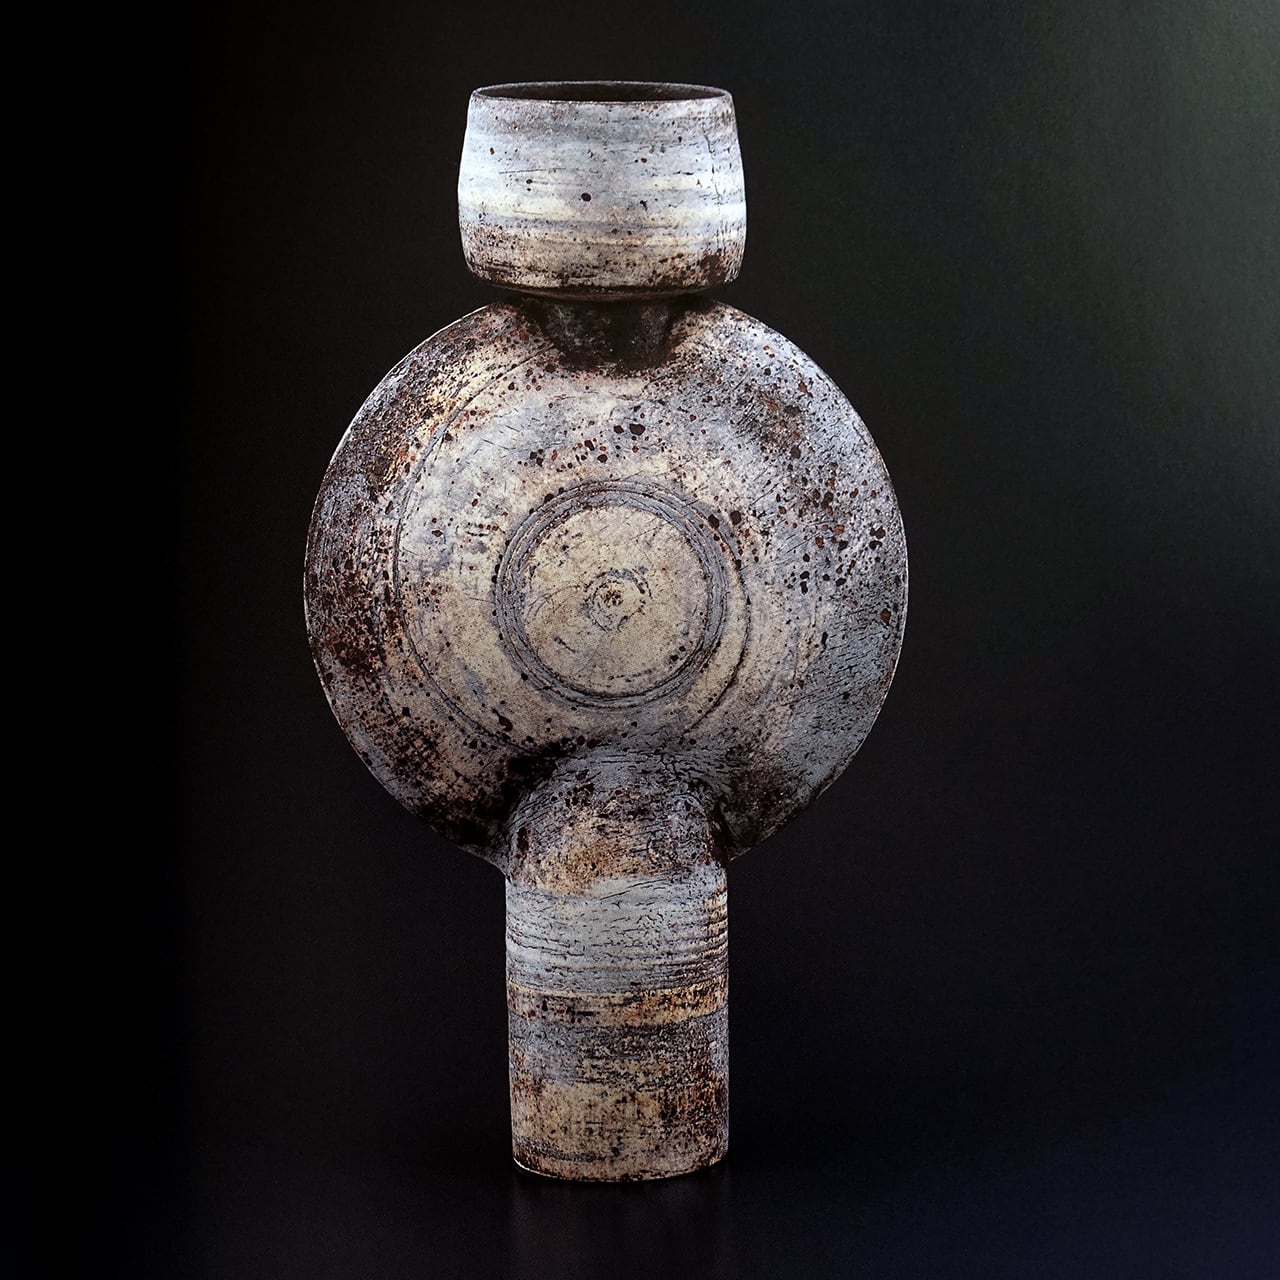 ハンス・コパー展図録   世紀陶器の革新   タイム